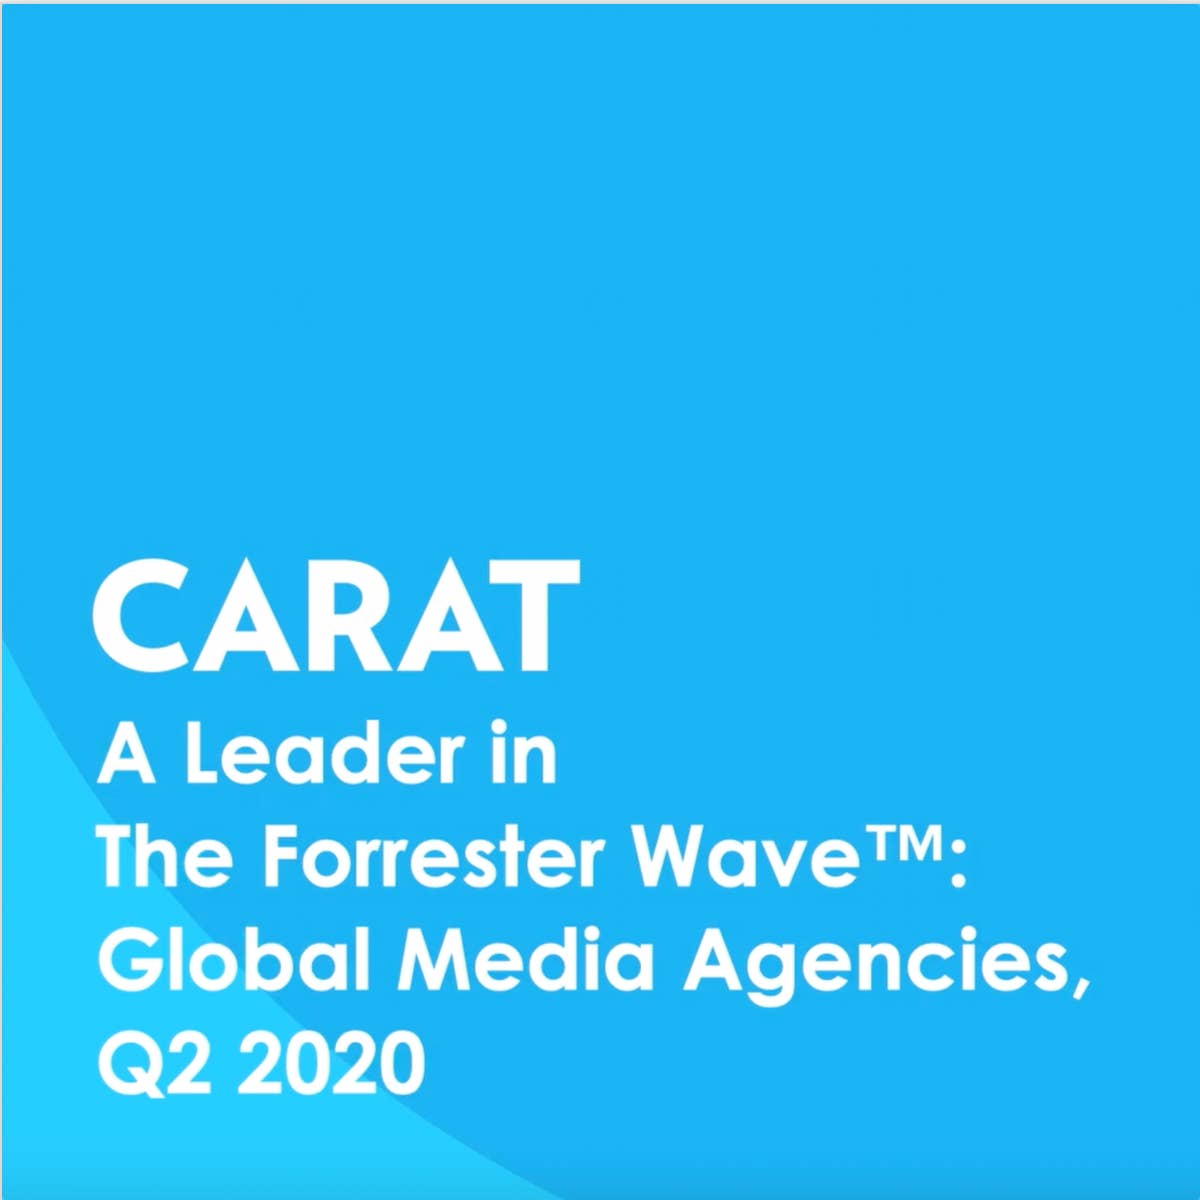 Carat named a leader amongst global media agencies